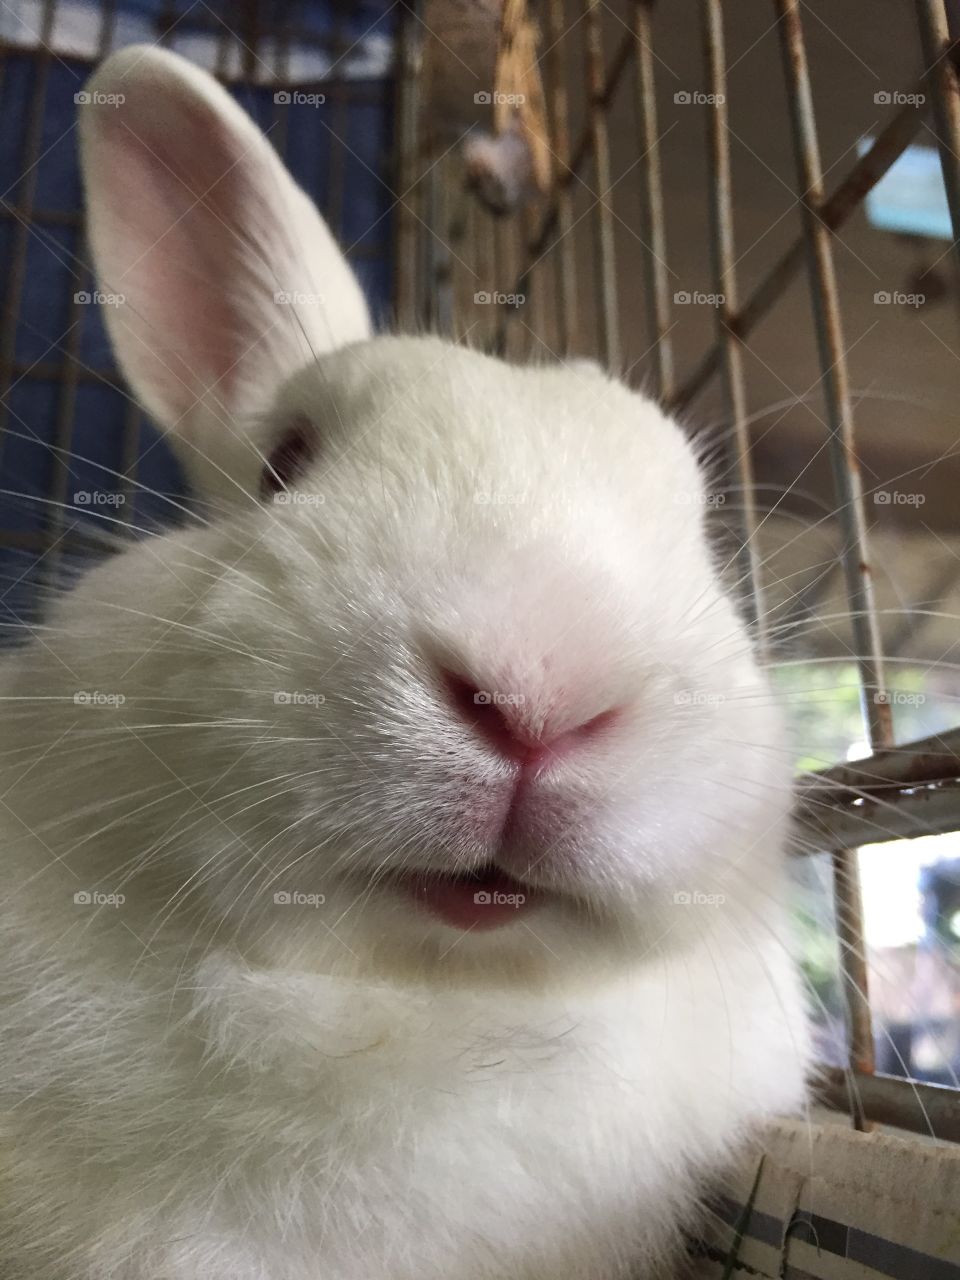 Closeup of rabbit